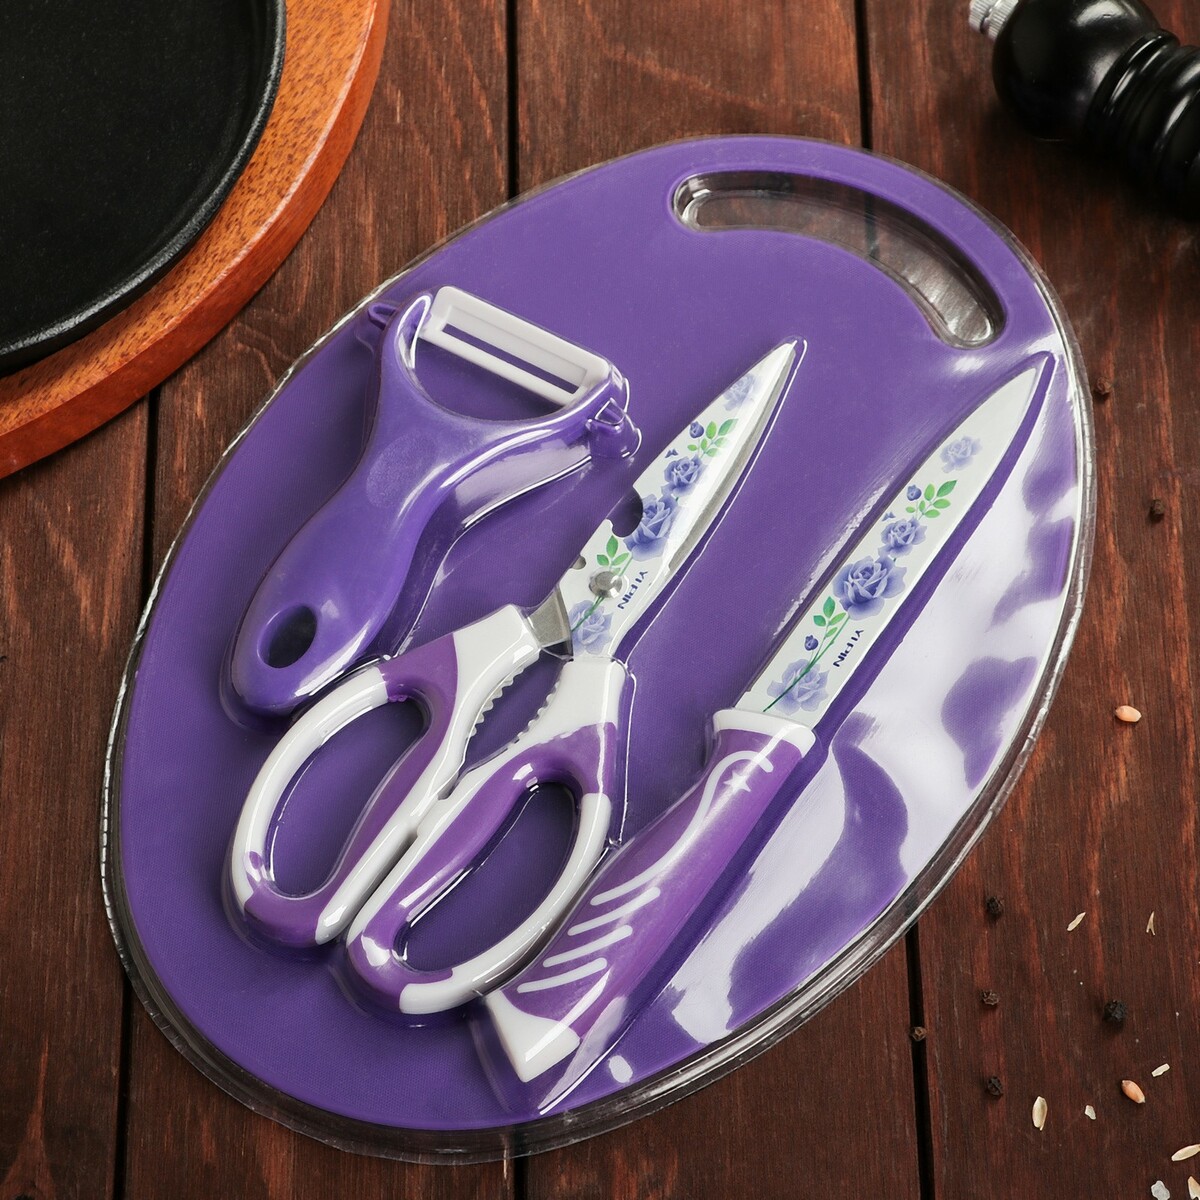 Кухонный нож ножницы. Набор кухонный (Овощечистка/ножныц/нож) SX-823. NEX Tool набор нож ножницы. Нож с фиолетовой ручкой. Набор кухонных инструментов hello Kitty, нож, ножницы, Овощечистка.